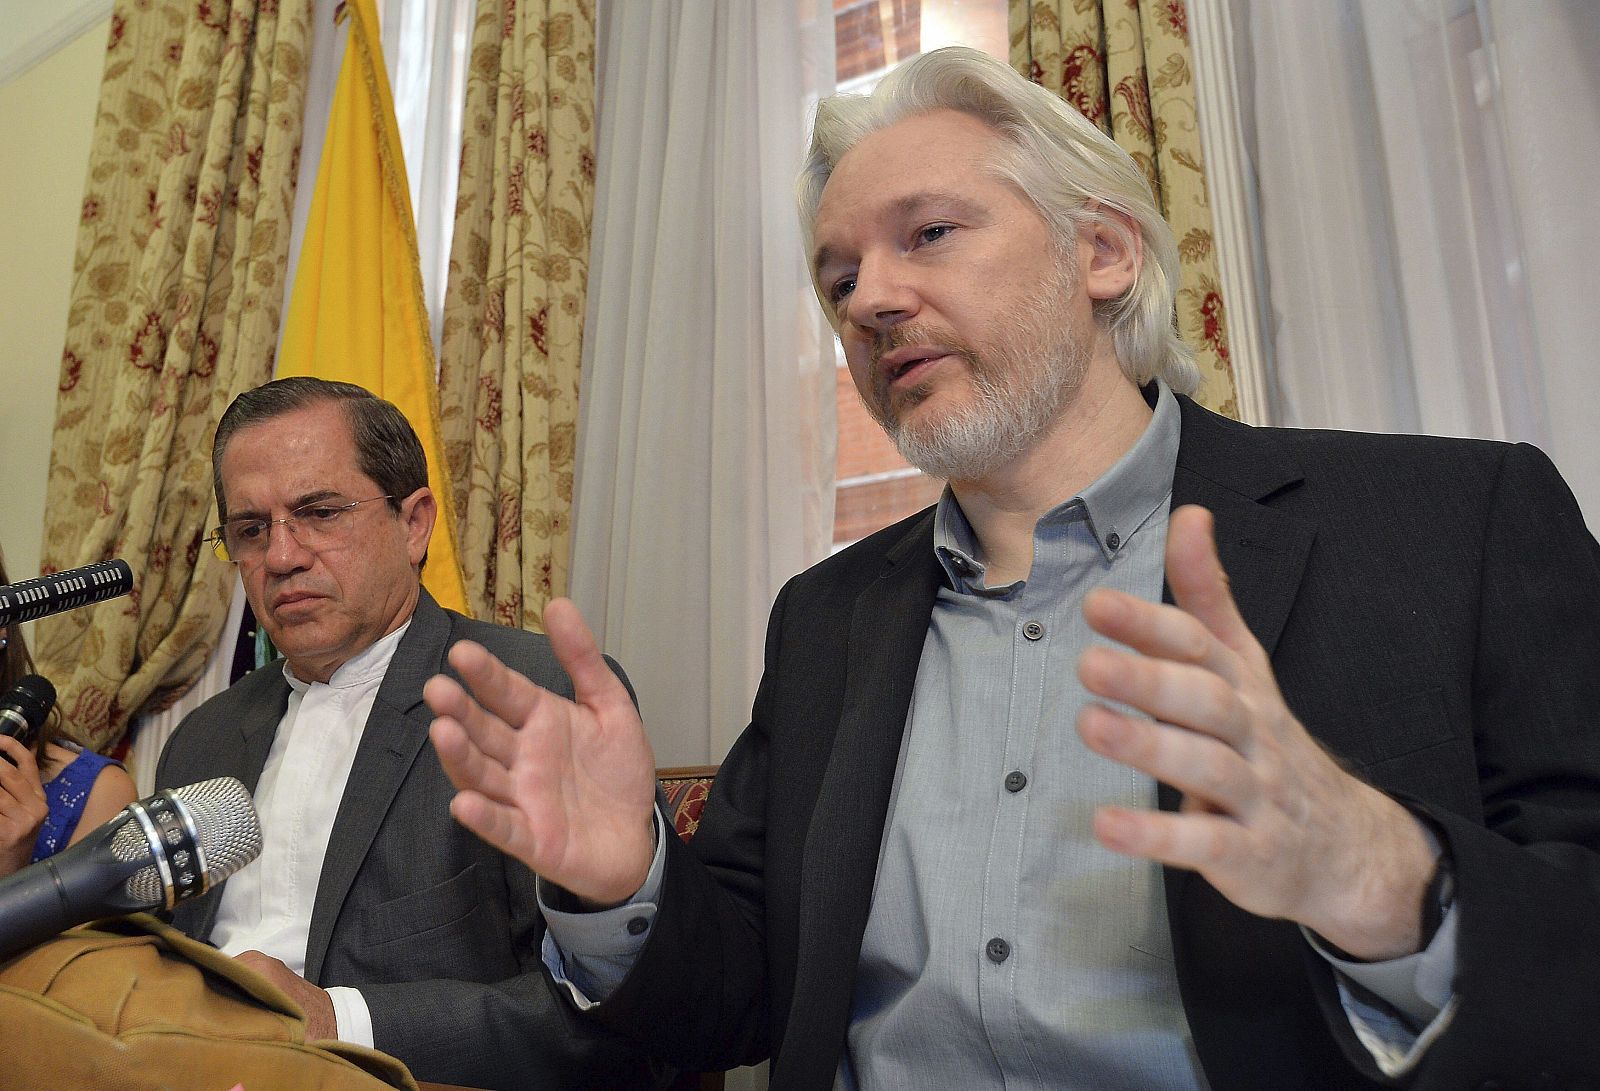 El fundador de Wikileaks, Julian Assange, ofrece una rueda de prensa en la embajada de Ecuador en Londres en una imagen de archivo.